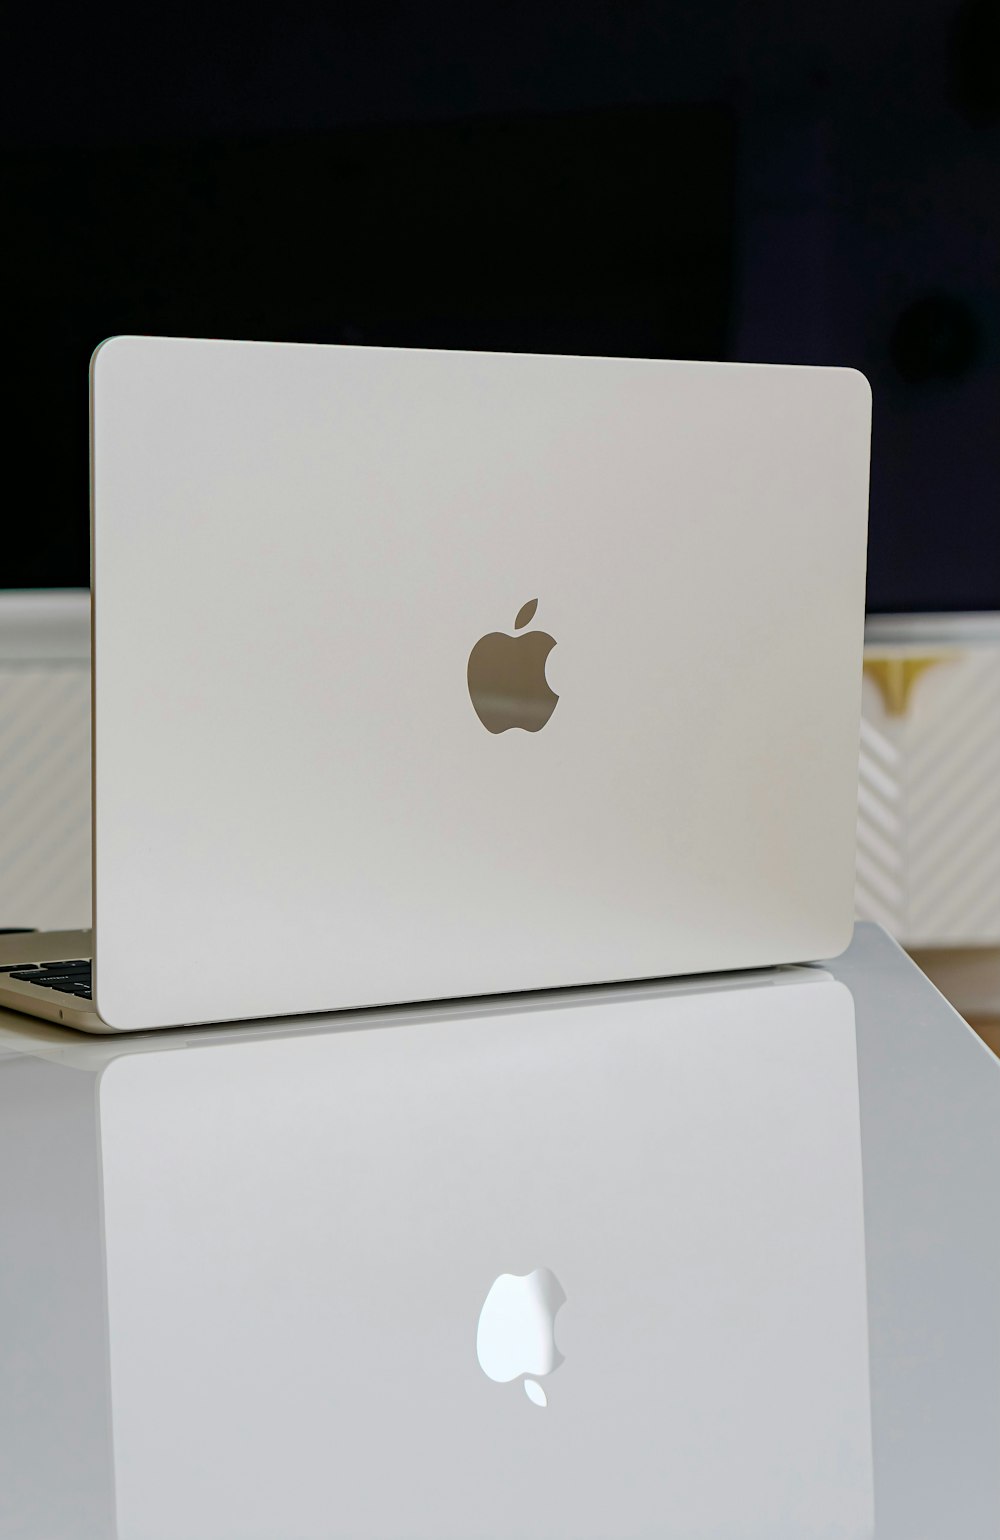 テーブルの上に置かれた白いアップルのノートパソコン